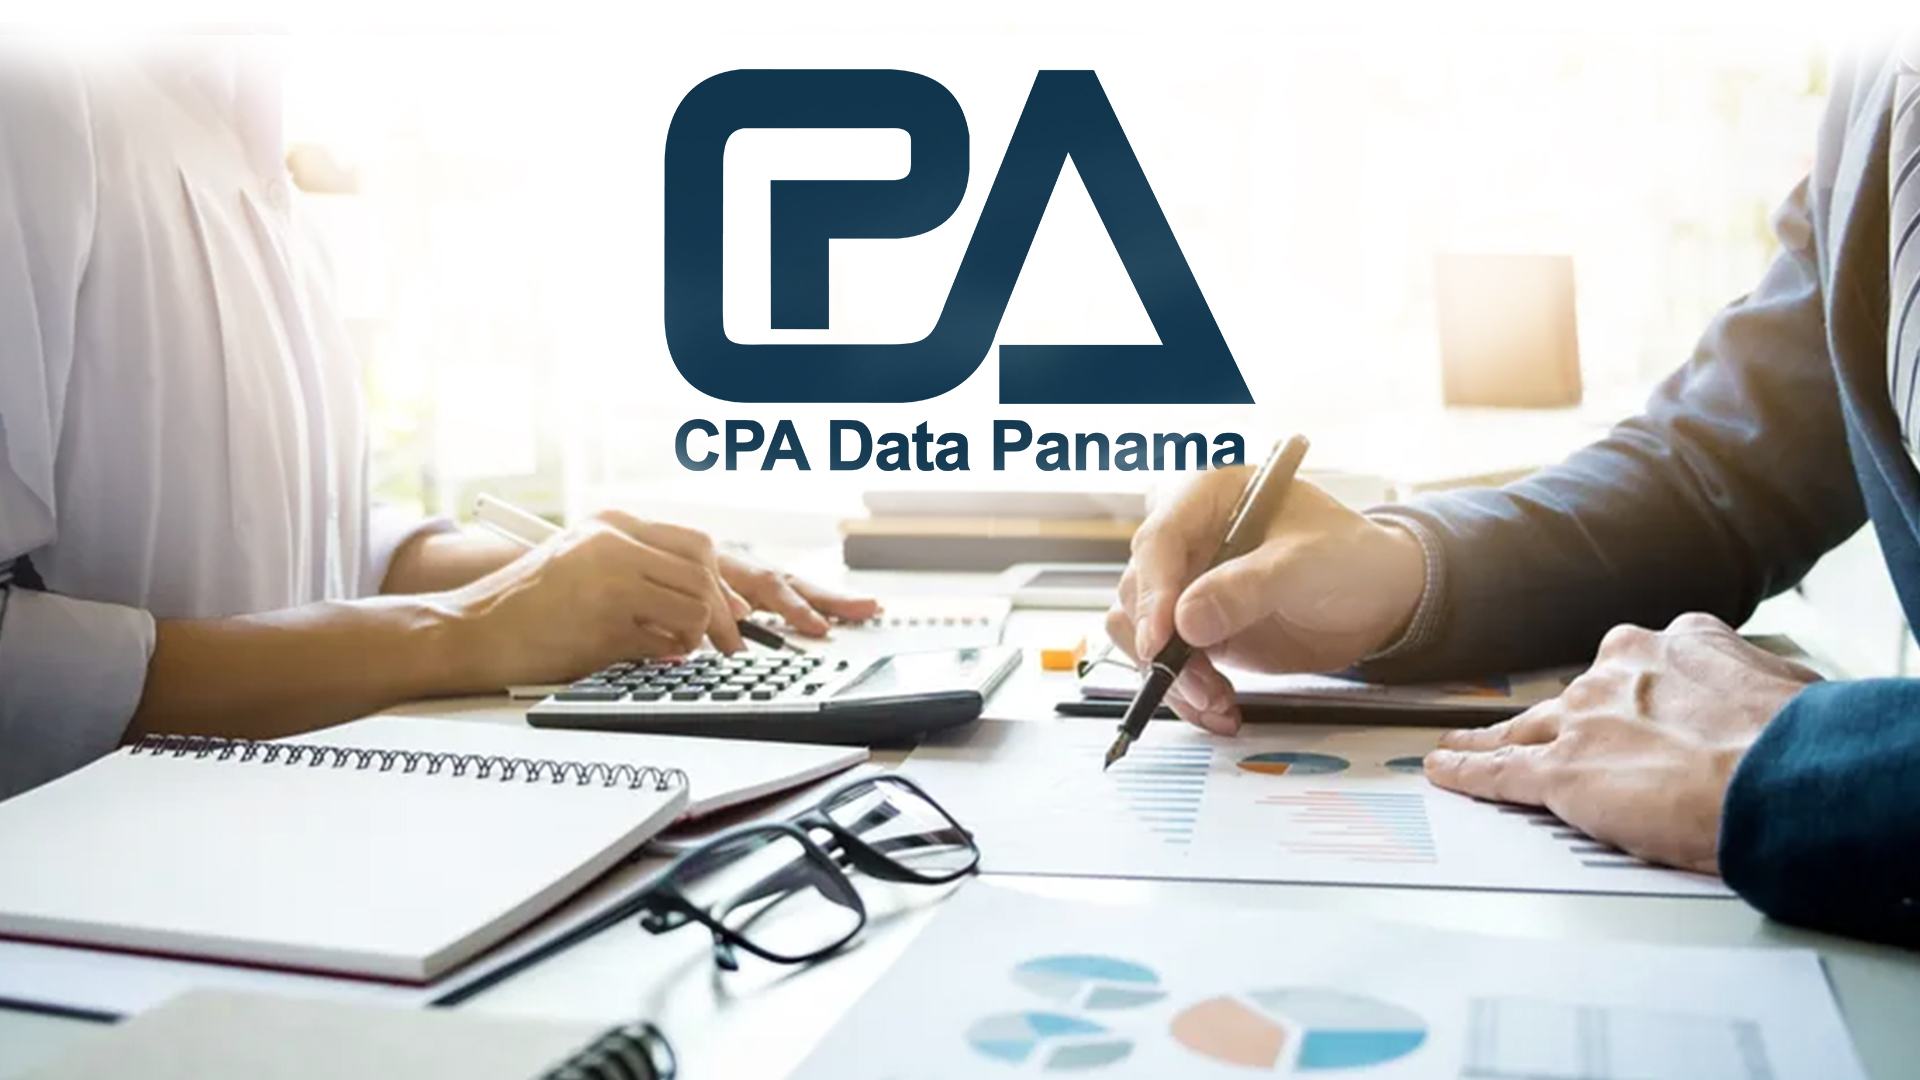 Le società offshore di Panama cercano il software di contabilitá